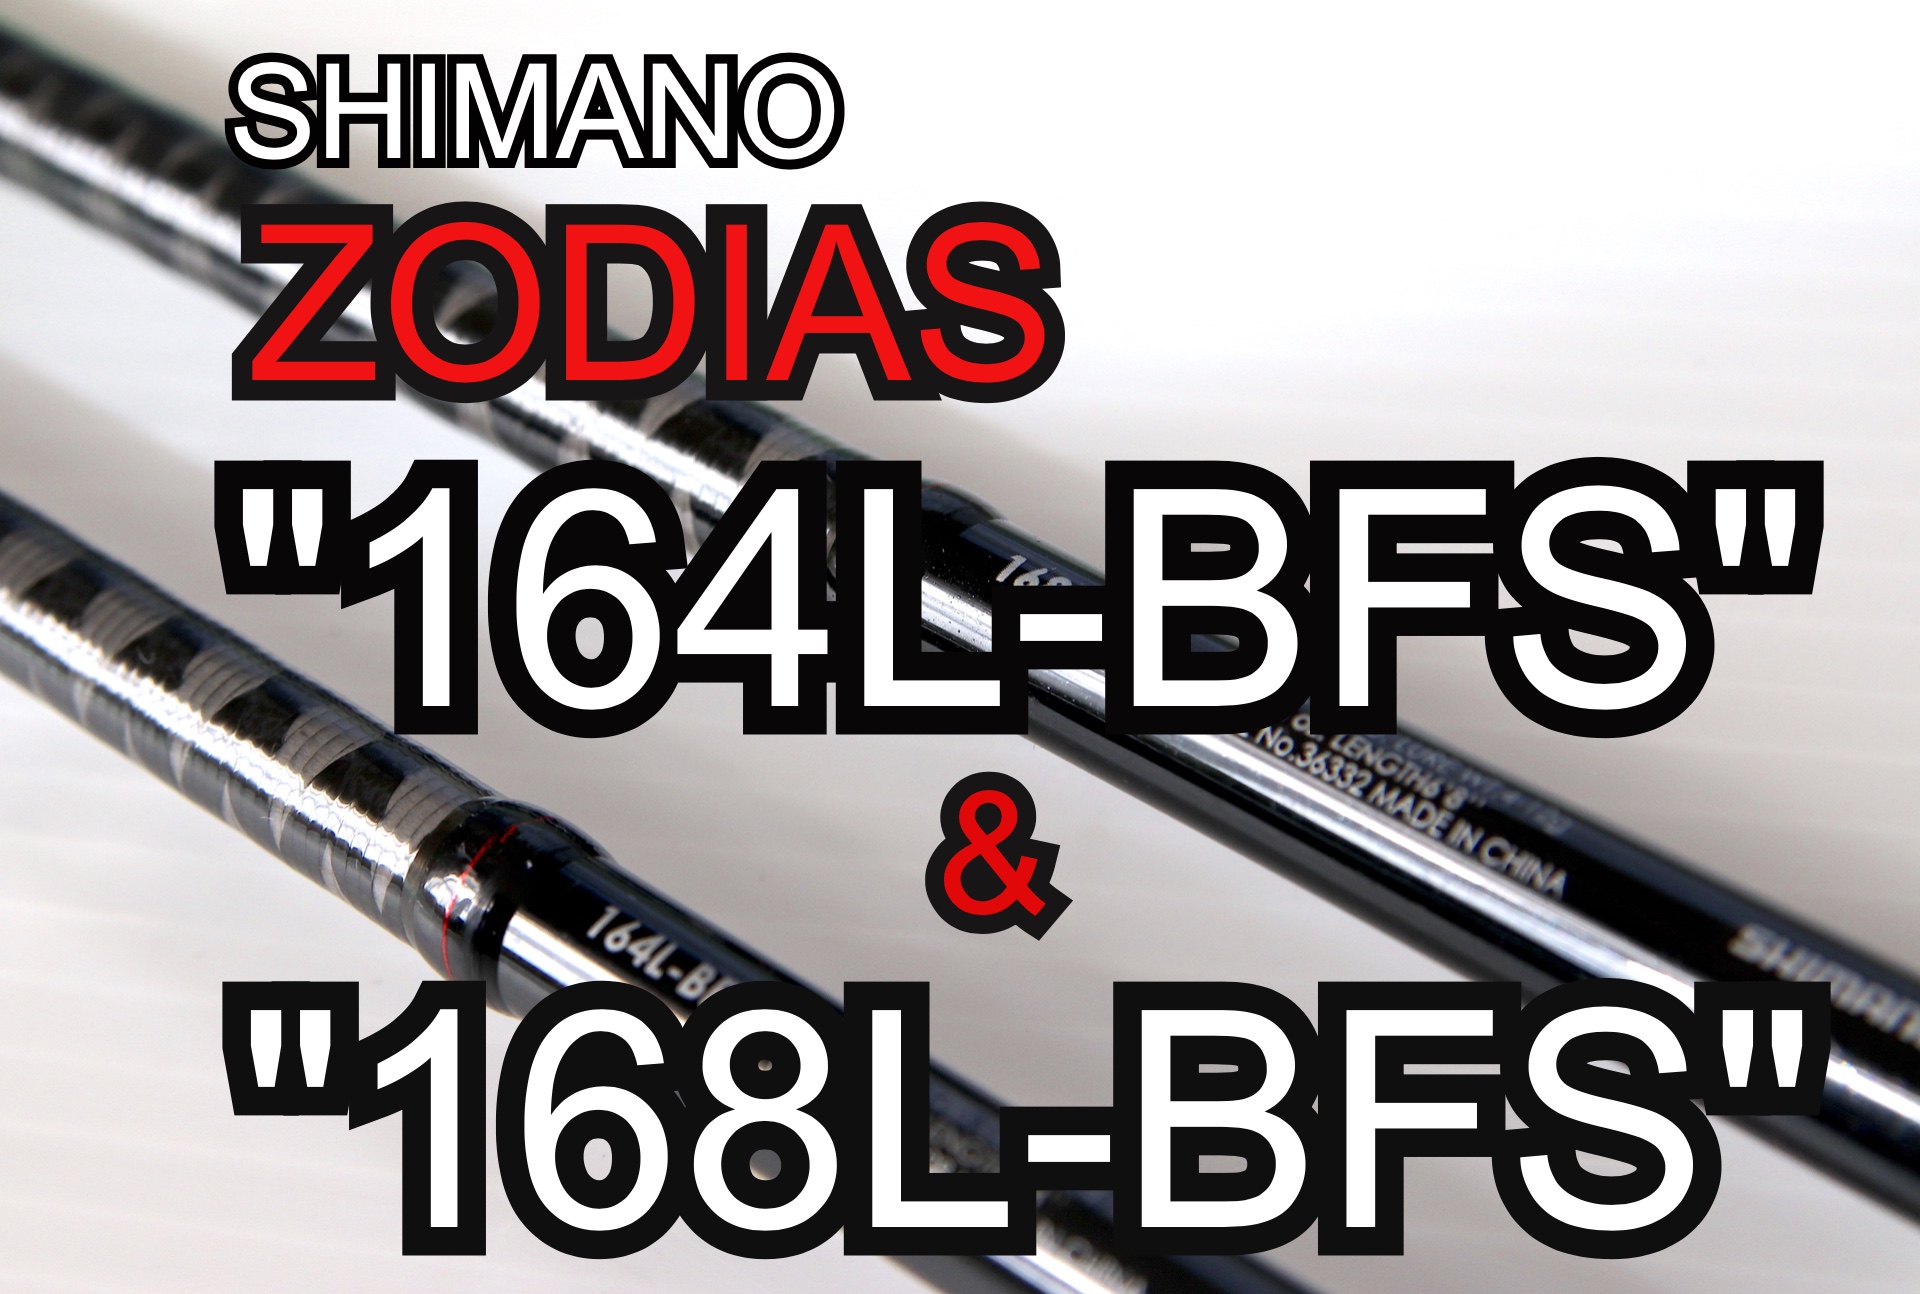 シマノ「ゾディアス164L-BFS」と「168L-BFS」を2年間使い込んだので、比較インプレしてみる。コスパ最高の超面白いロッドです。